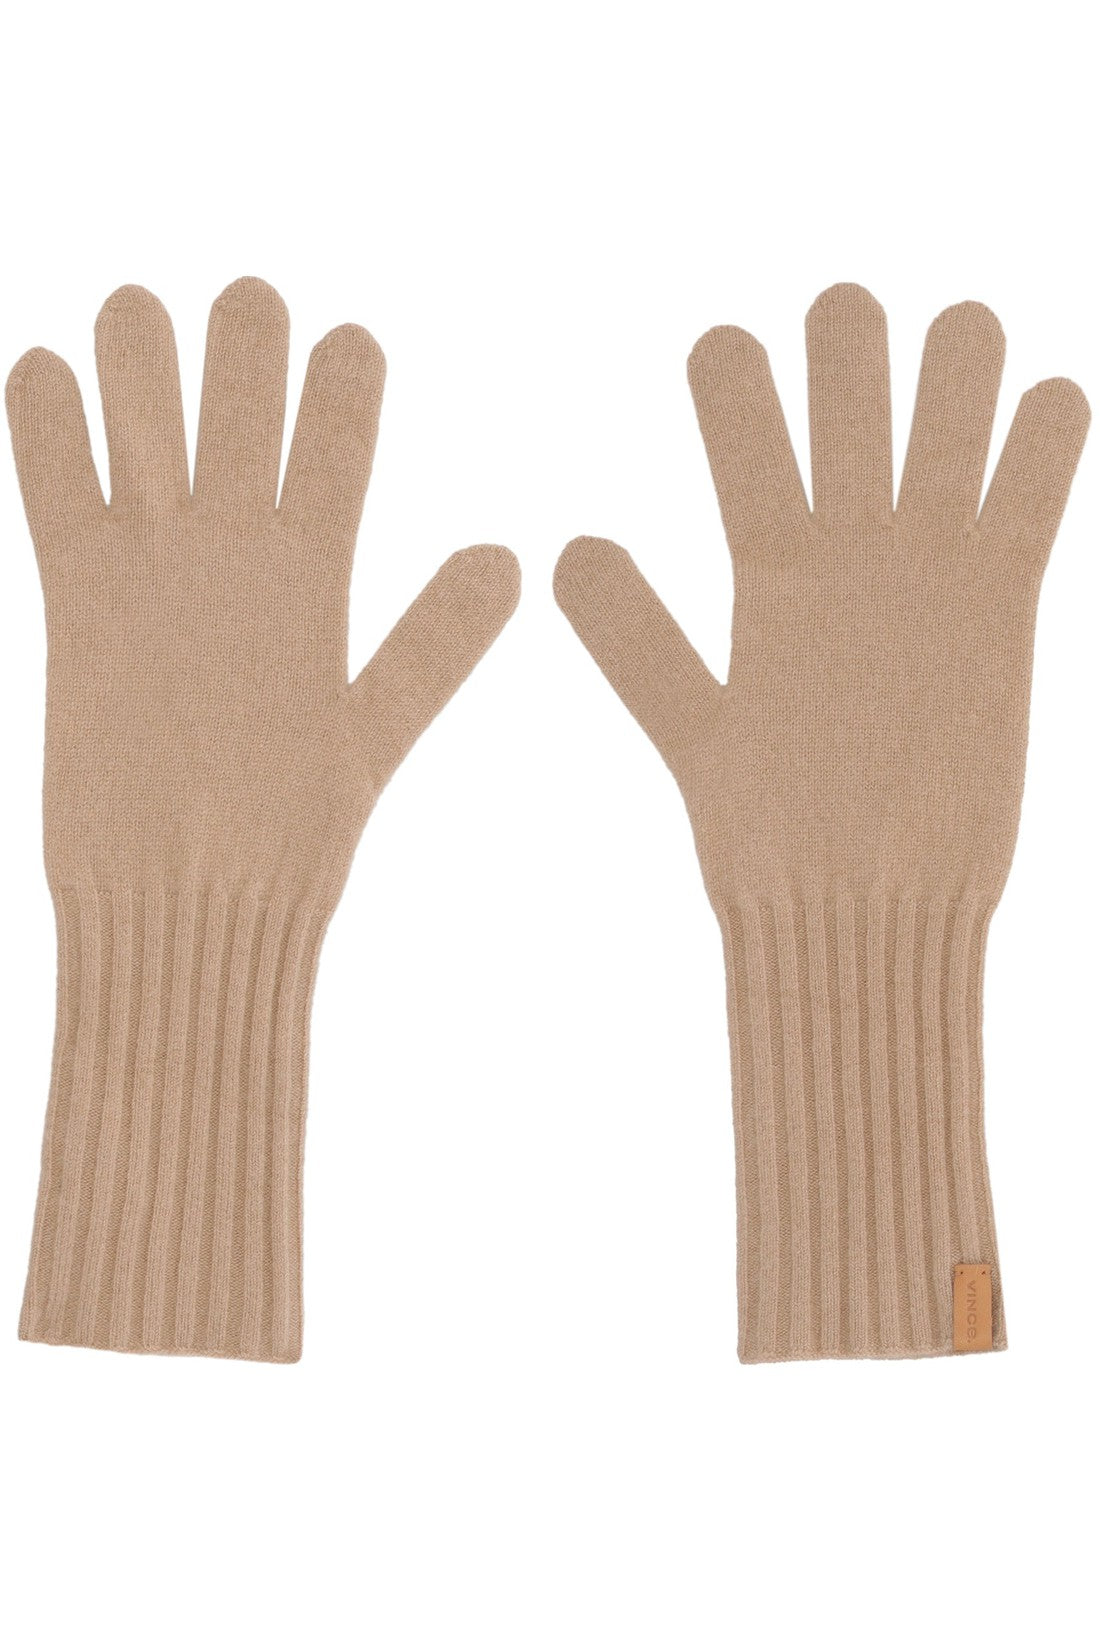 Vince-OUTLET-SALE-Cashmere gloves-ARCHIVIST